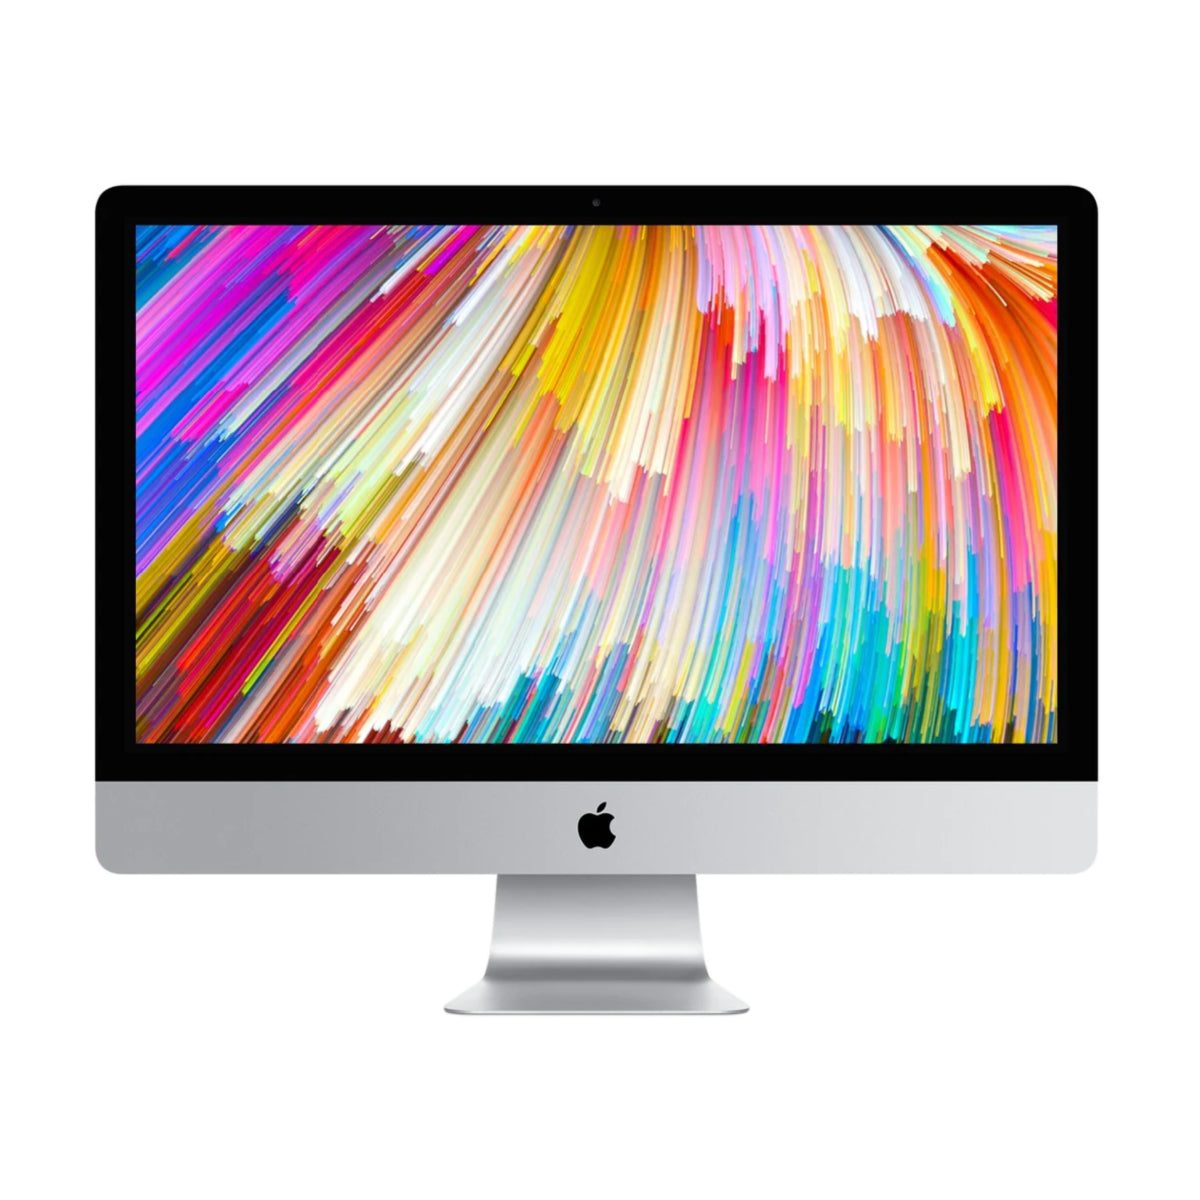 iMac 27-inch (5K) i5 3.4 32GB 256GB SSD - test-product-media-liquid1